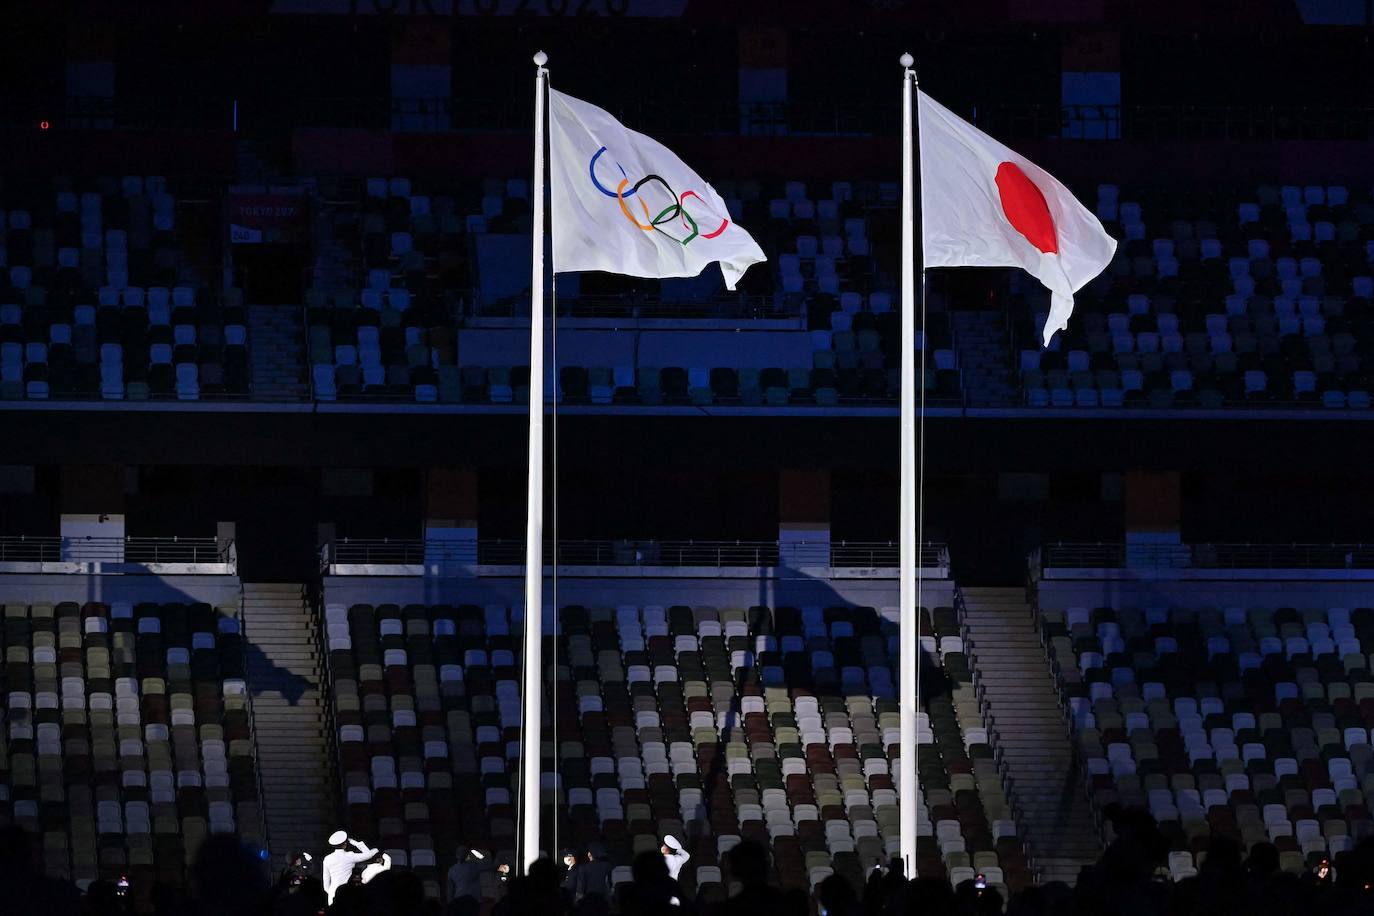 La bandera olímpica se iza junto a la bandera nacional japonesa durante la ceremonia de inauguración de los Juegos Olímpicos de Tokio 2020.